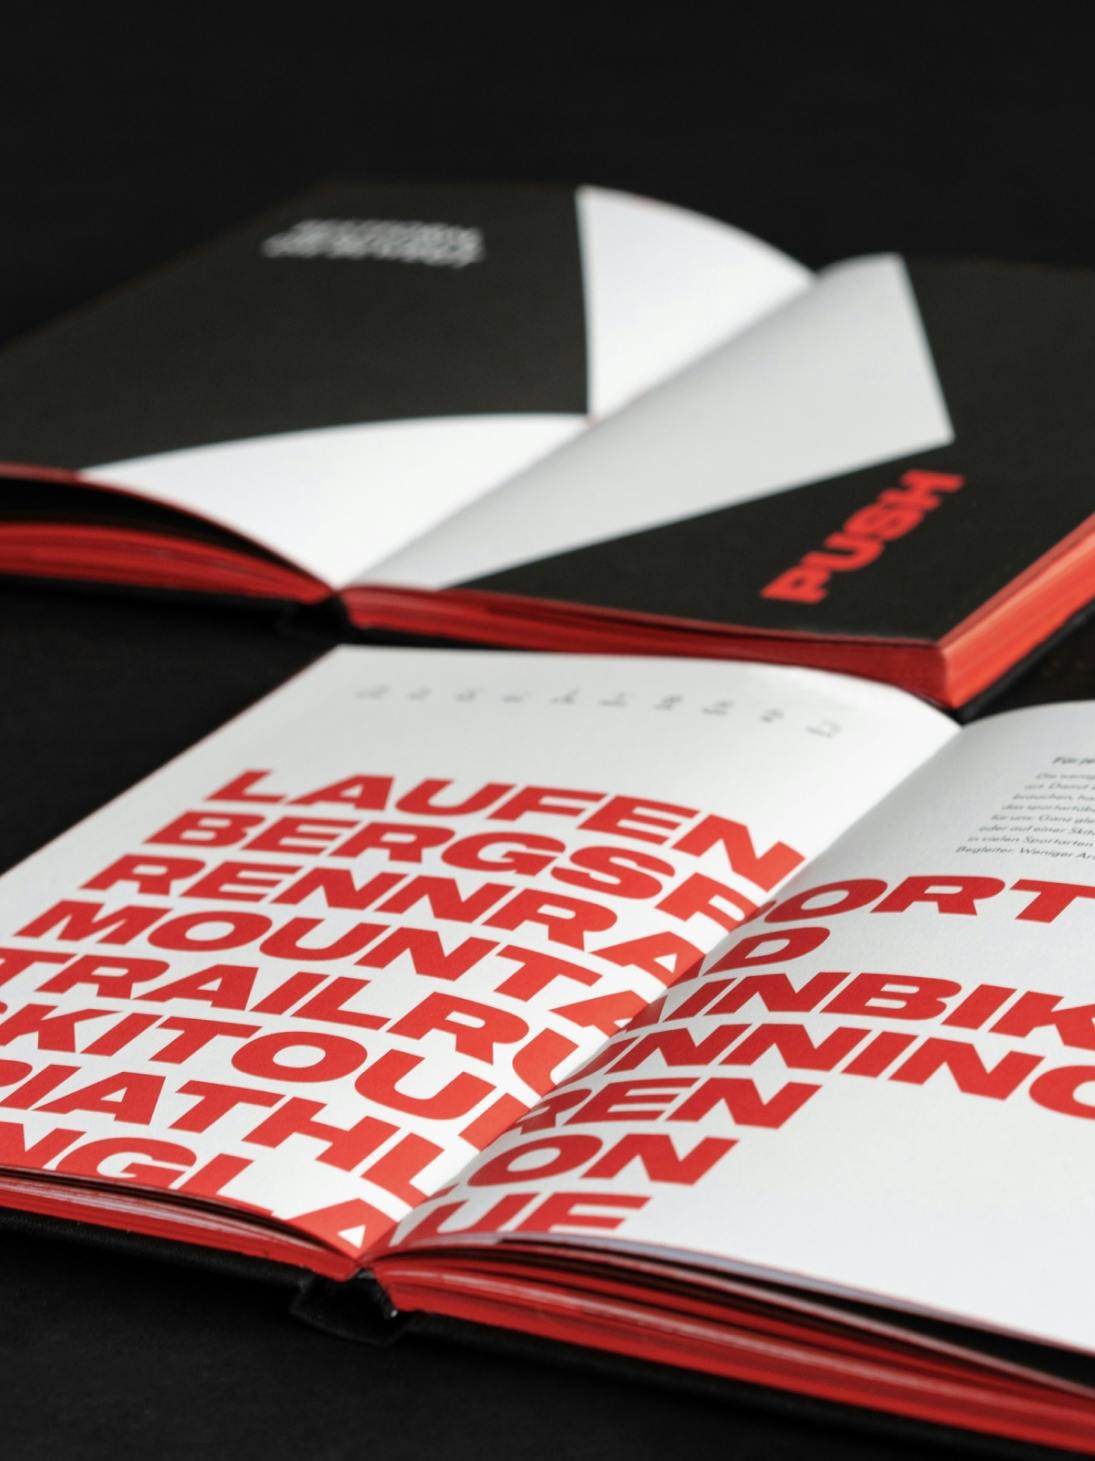 Foto von zwei Doppelseiten des skinfit brand books mit großer Typografie und plakativem Design © gm gobiq